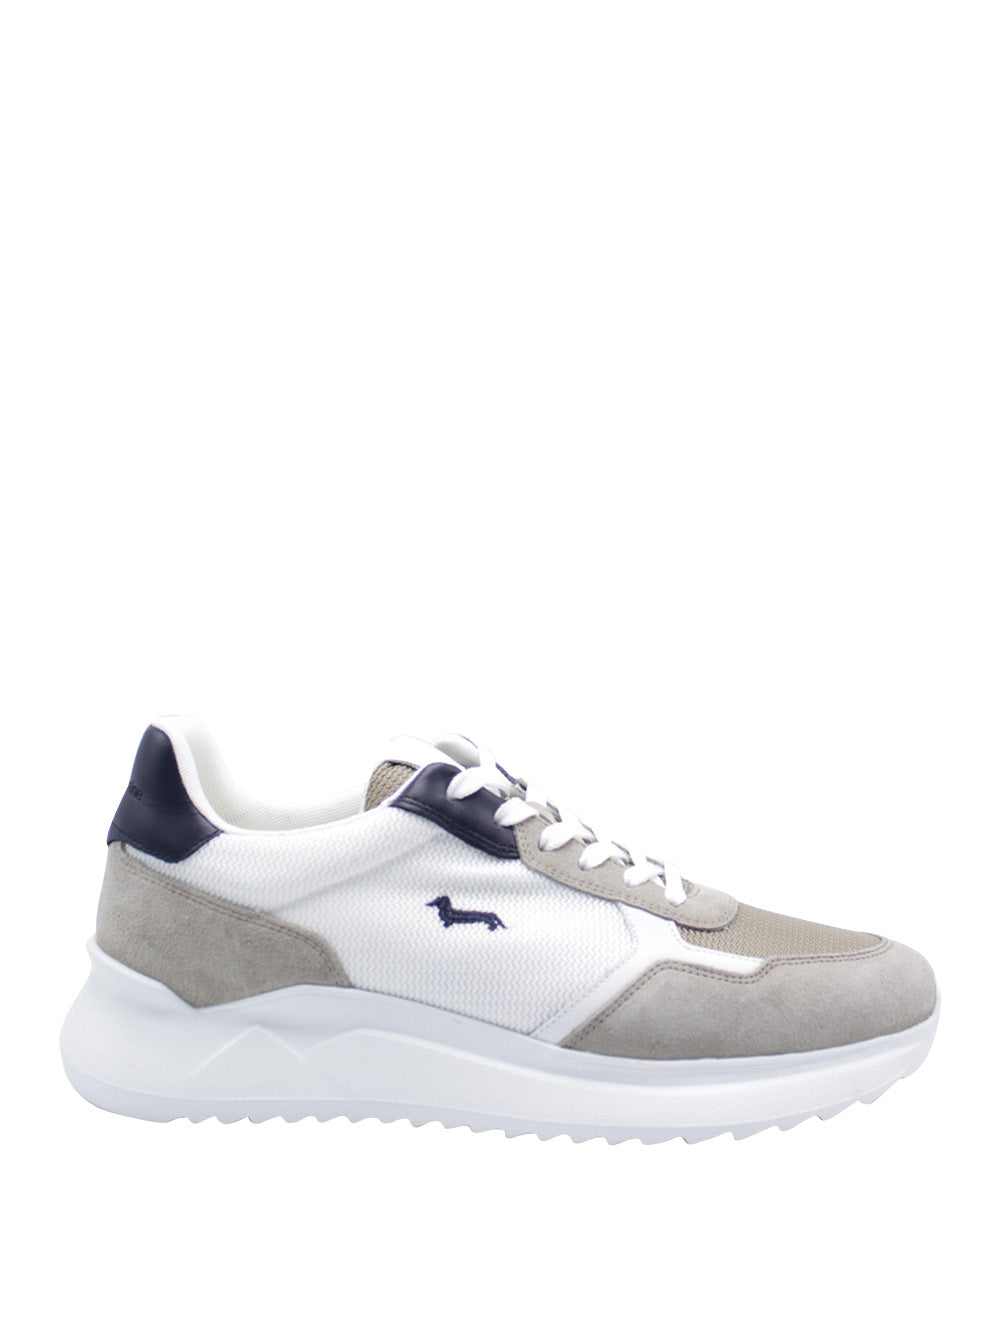 HARMONT&BLAINE Sneakers Uomo - Beige modello EFM241.031.6240